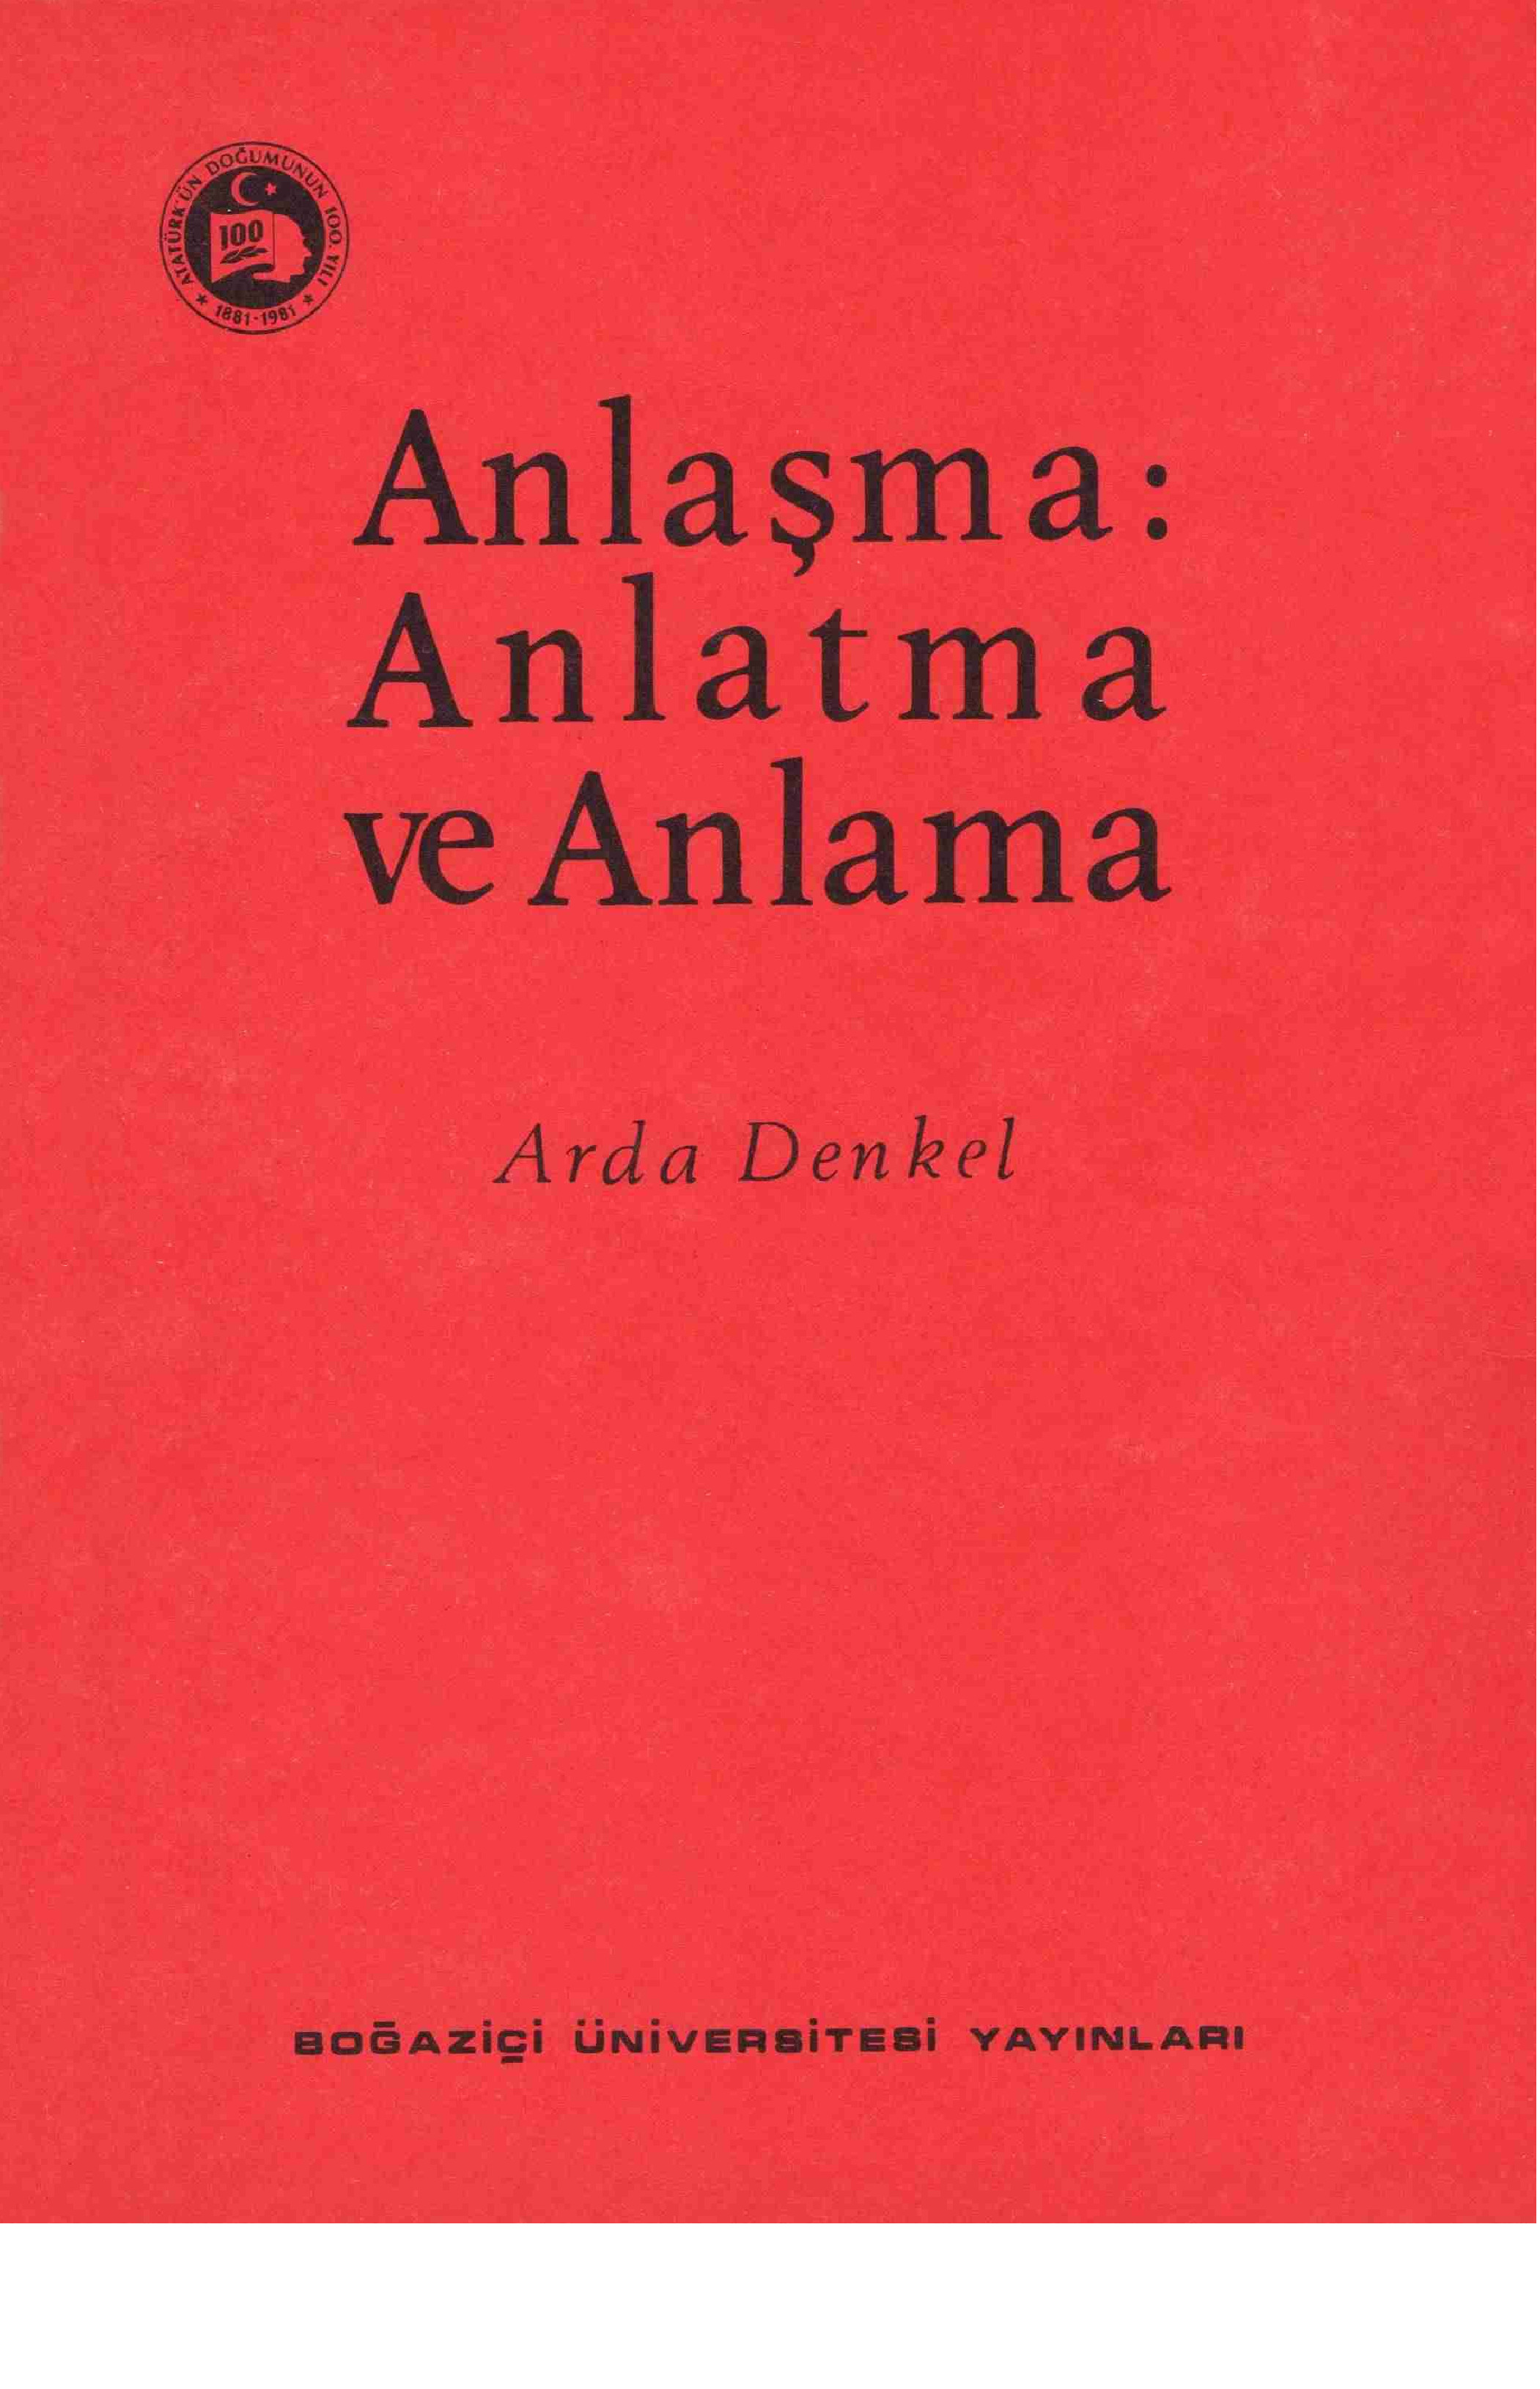 Anlaşma Anlatma Ve Anlama-Arda Denkel-1981-103s